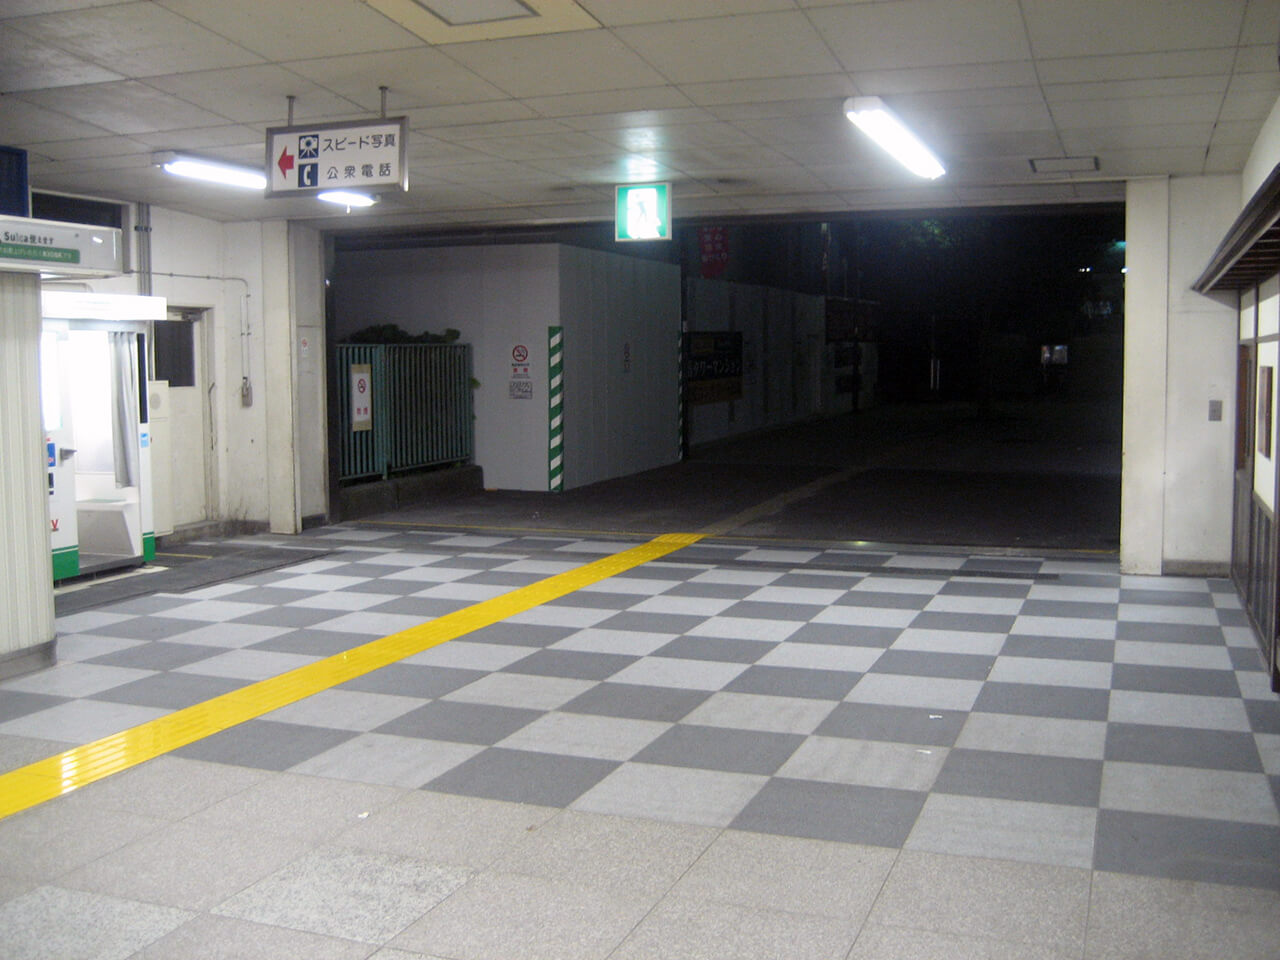 屋外からJR東日本東戸塚駅西口へ繋がるコンコース床に使用されているハイブリッドストーン アベイラス アンプロップを西口側から見た様子